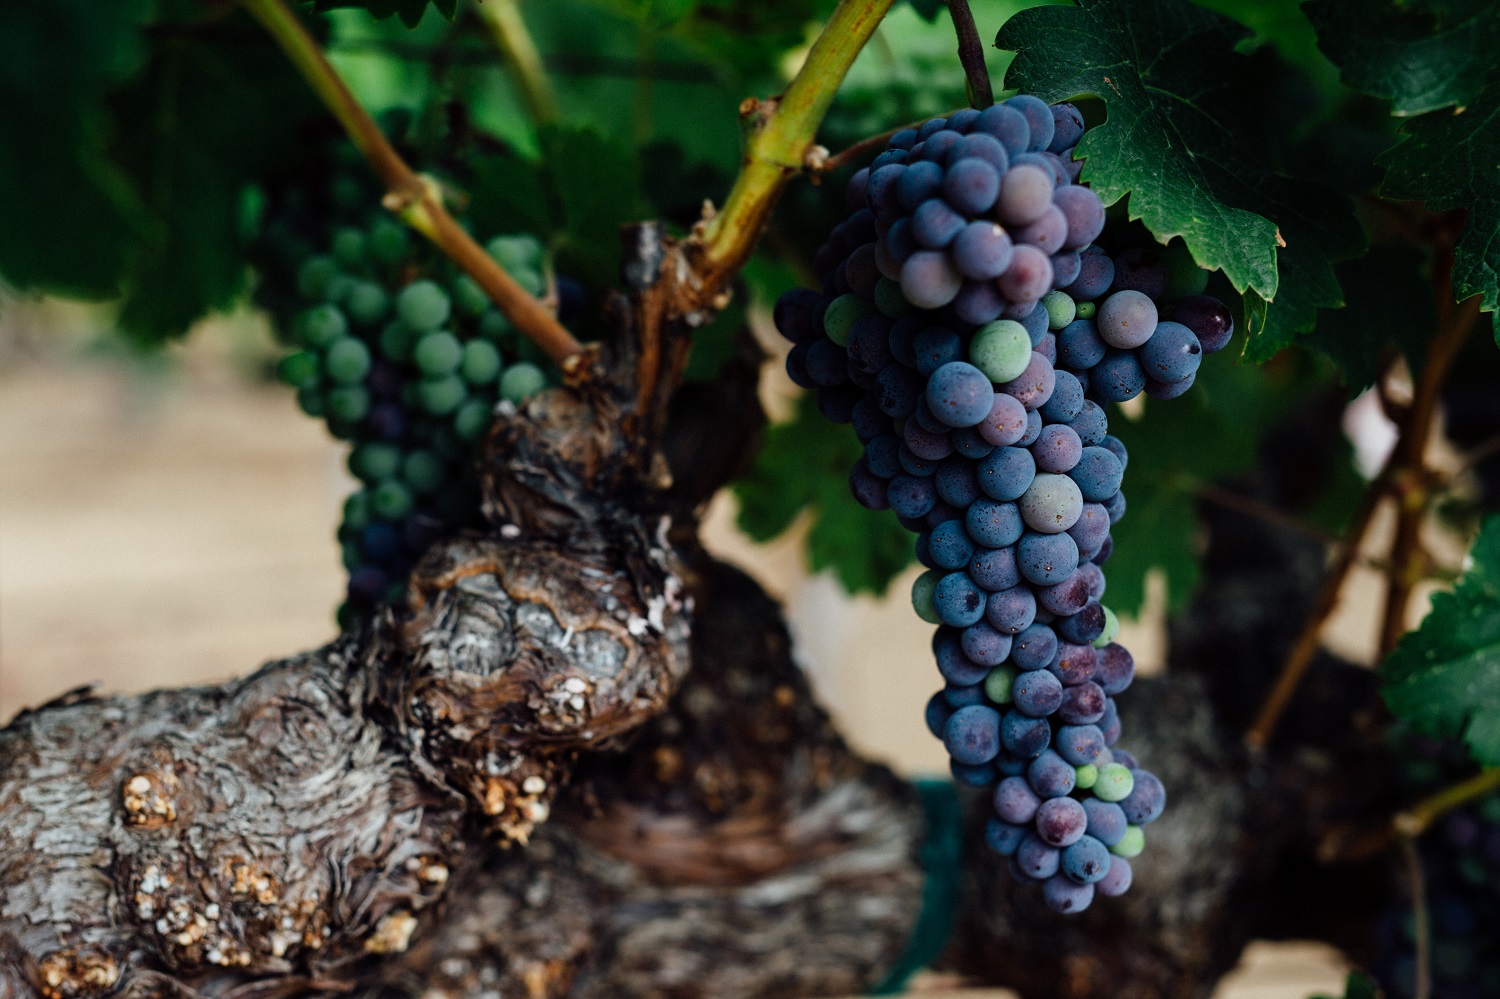 Cabernet Sauvignon has long been the focus at Abreu vineyards